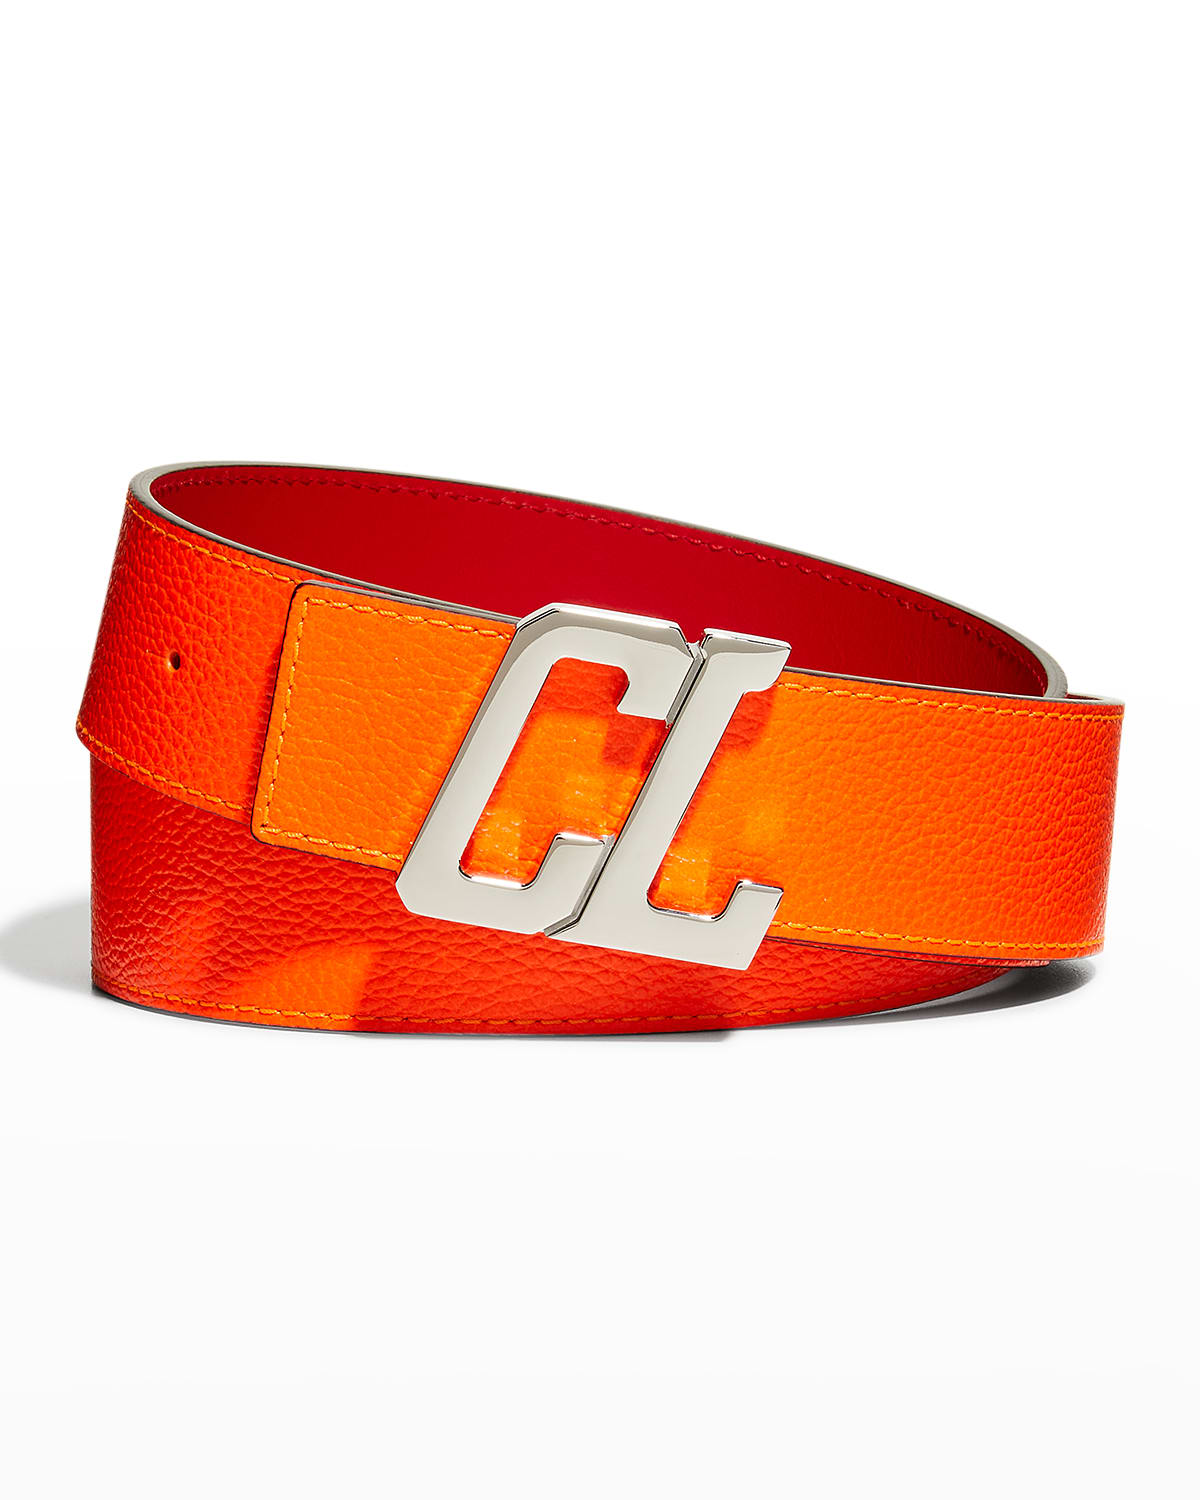 Men's CL Happyrui Leather Belt